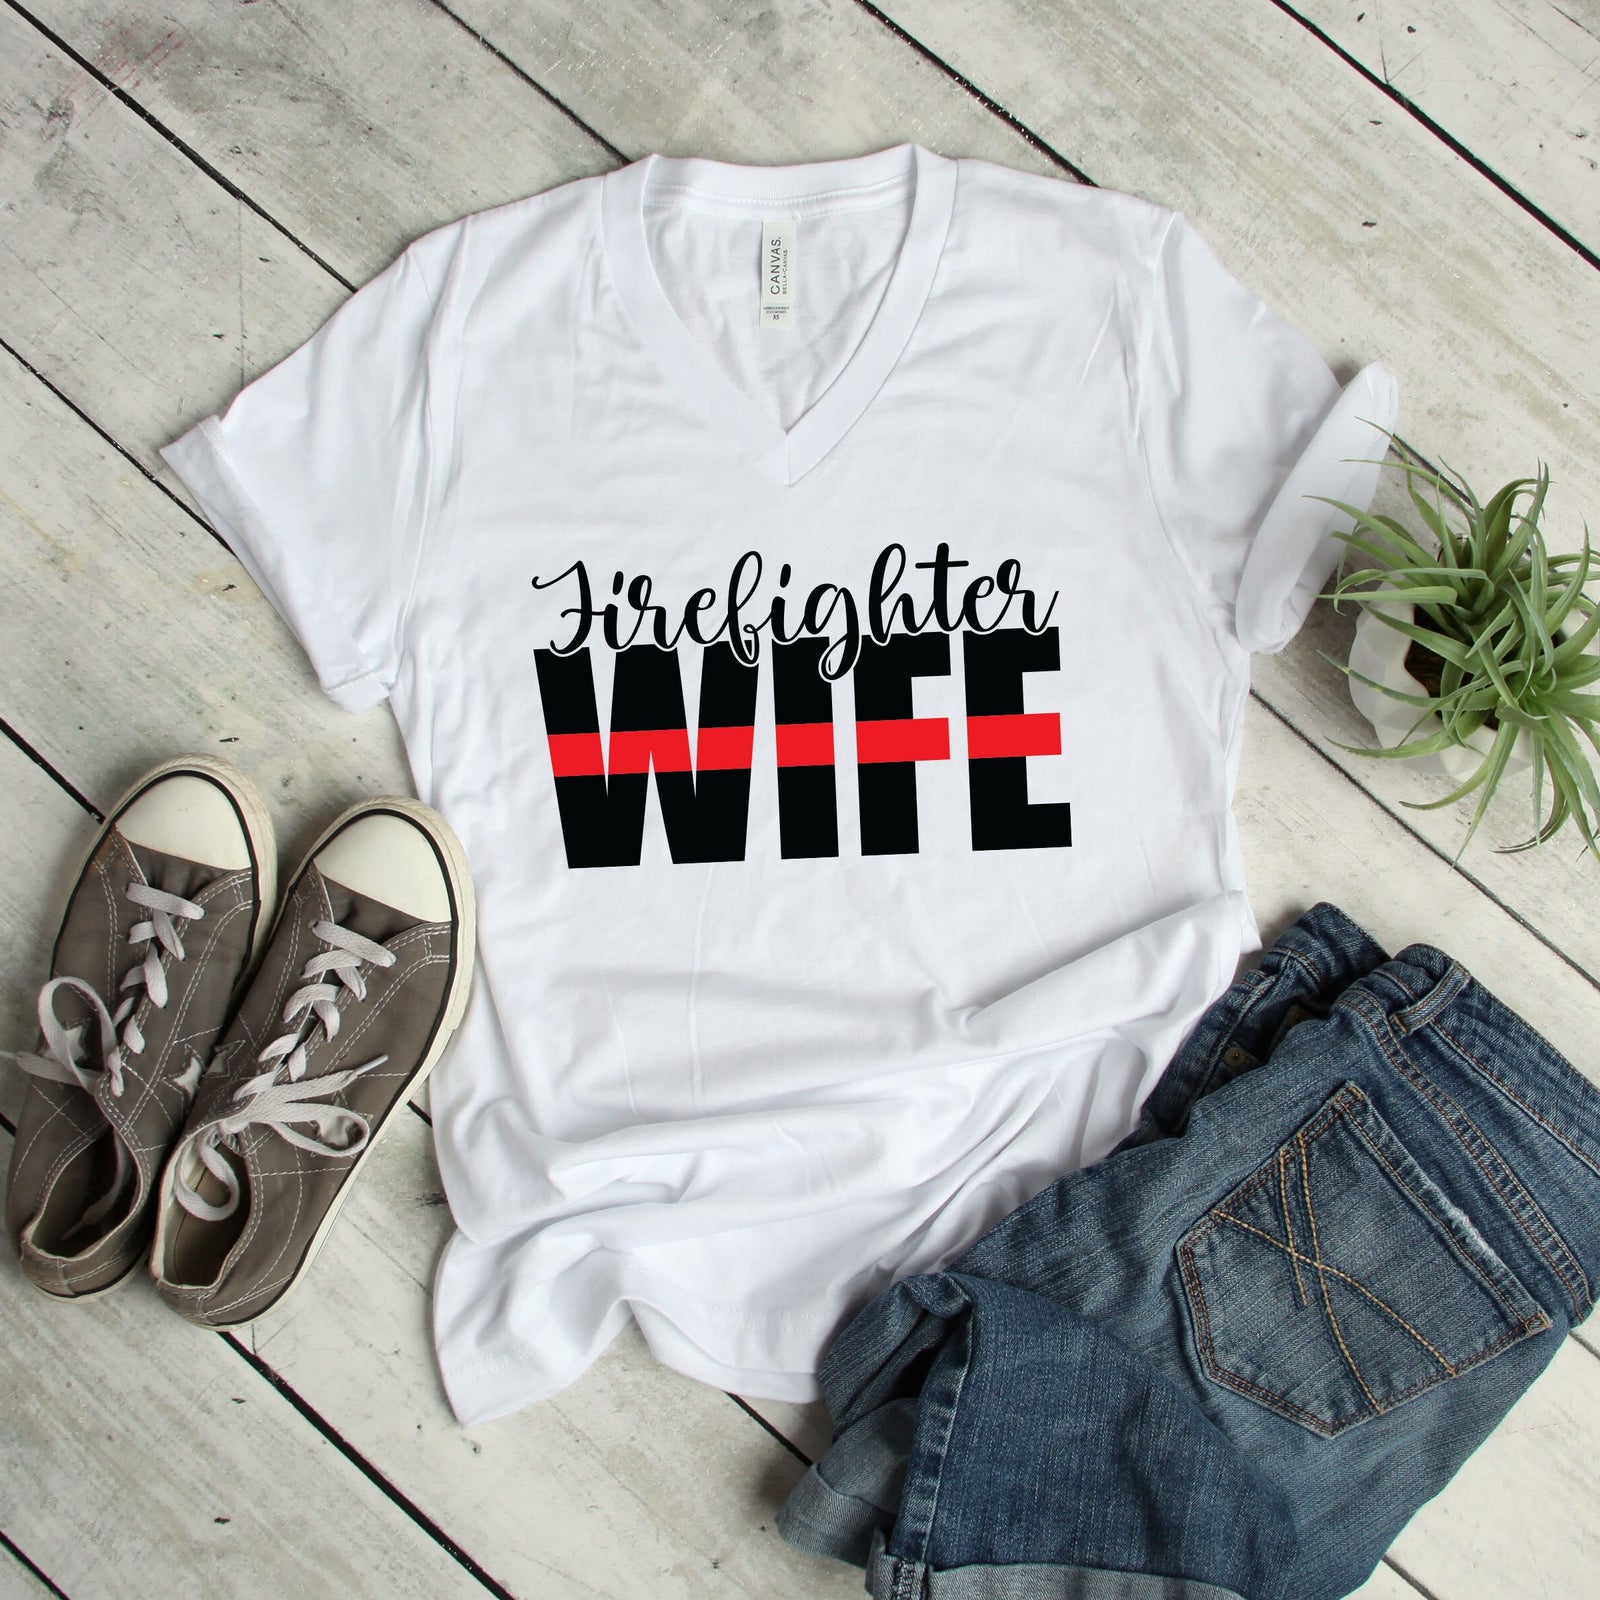 Firefighter Wife Shirt - Fire Fighter Love T Shirt - Firefighter Wife Statement Shirt